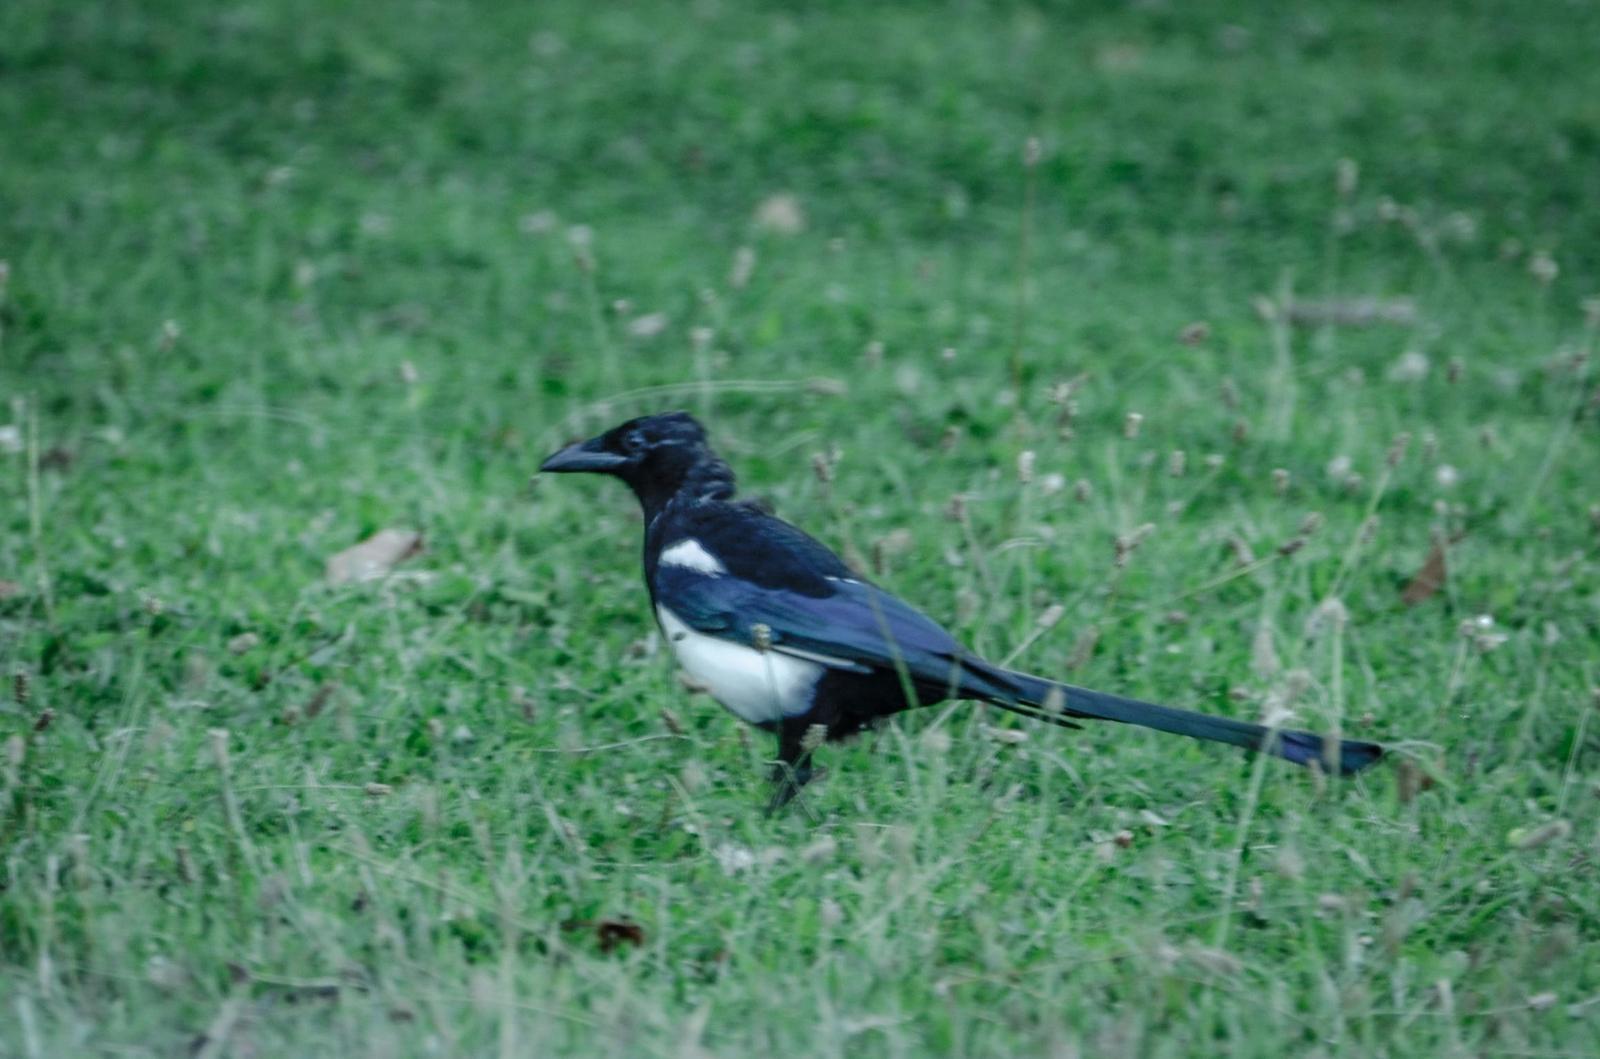 Black-billed Magpie Photo by Scott Yerges